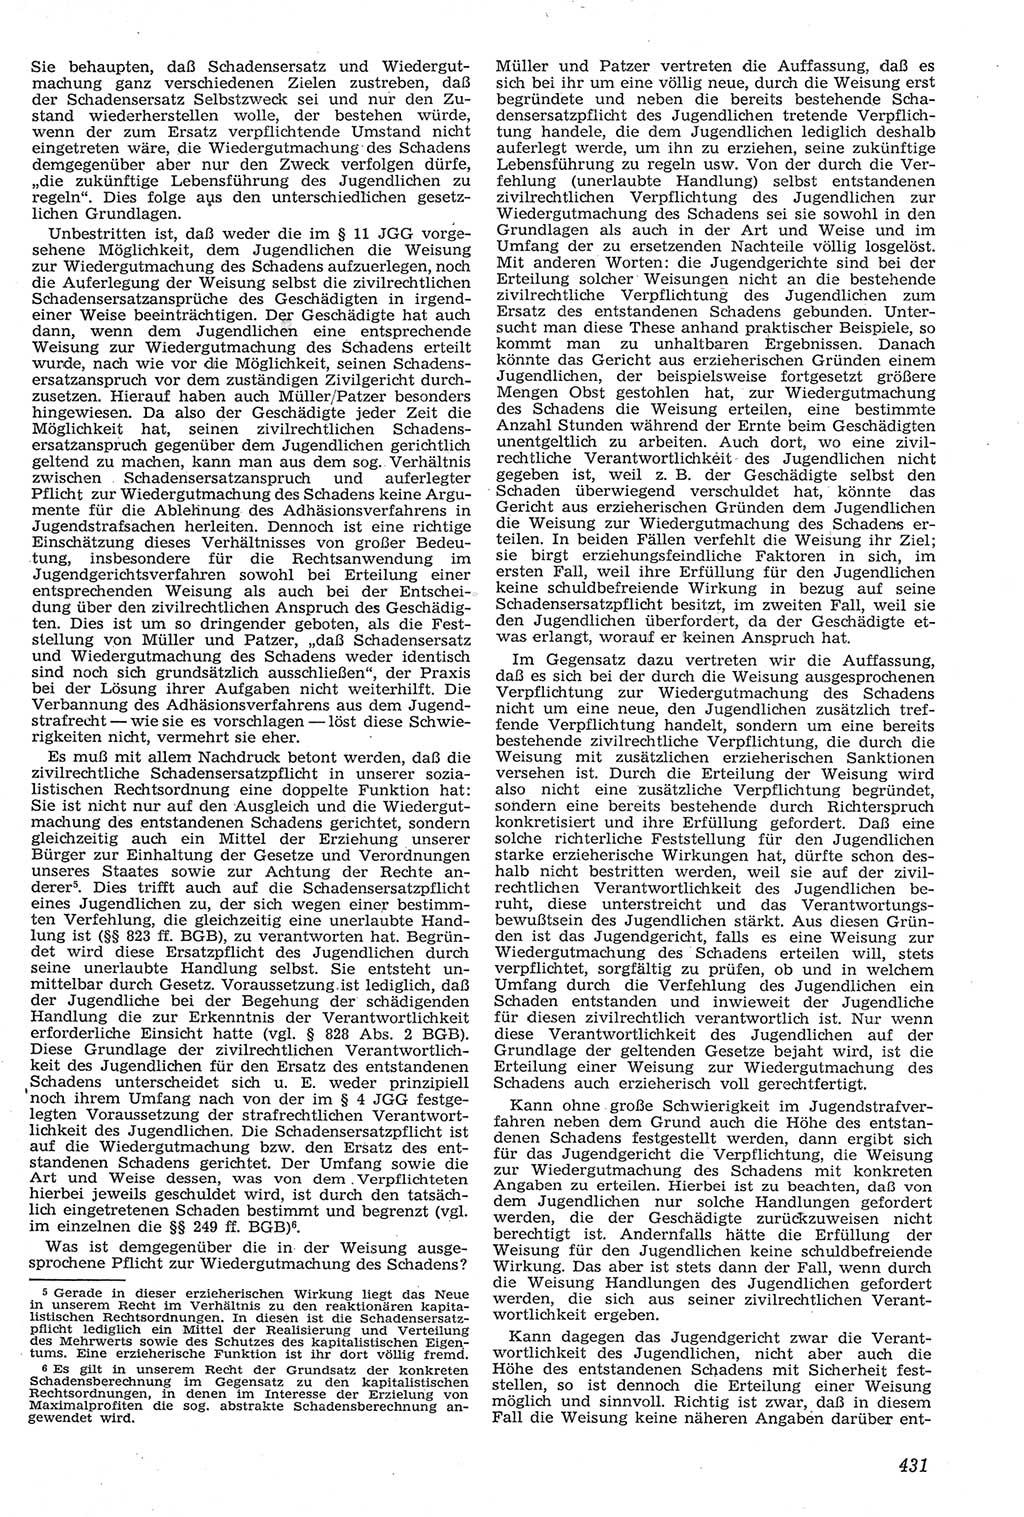 Neue Justiz (NJ), Zeitschrift für Recht und Rechtswissenschaft [Deutsche Demokratische Republik (DDR)], 11. Jahrgang 1957, Seite 431 (NJ DDR 1957, S. 431)